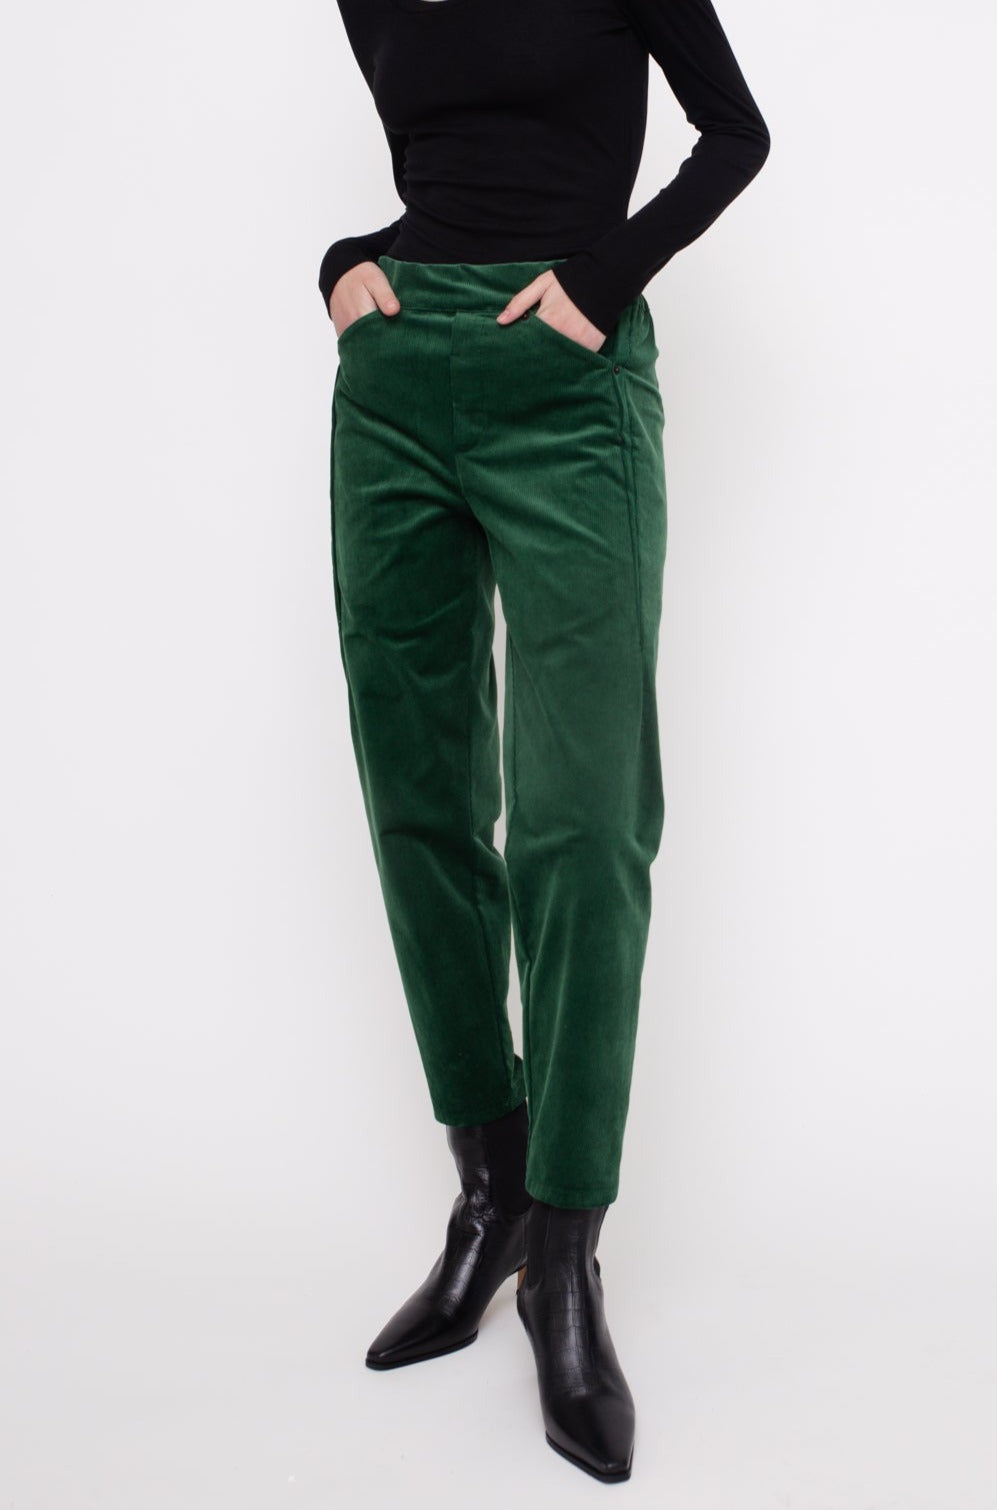 MARTIN Pants W24 (34-42) - Green Corduroy